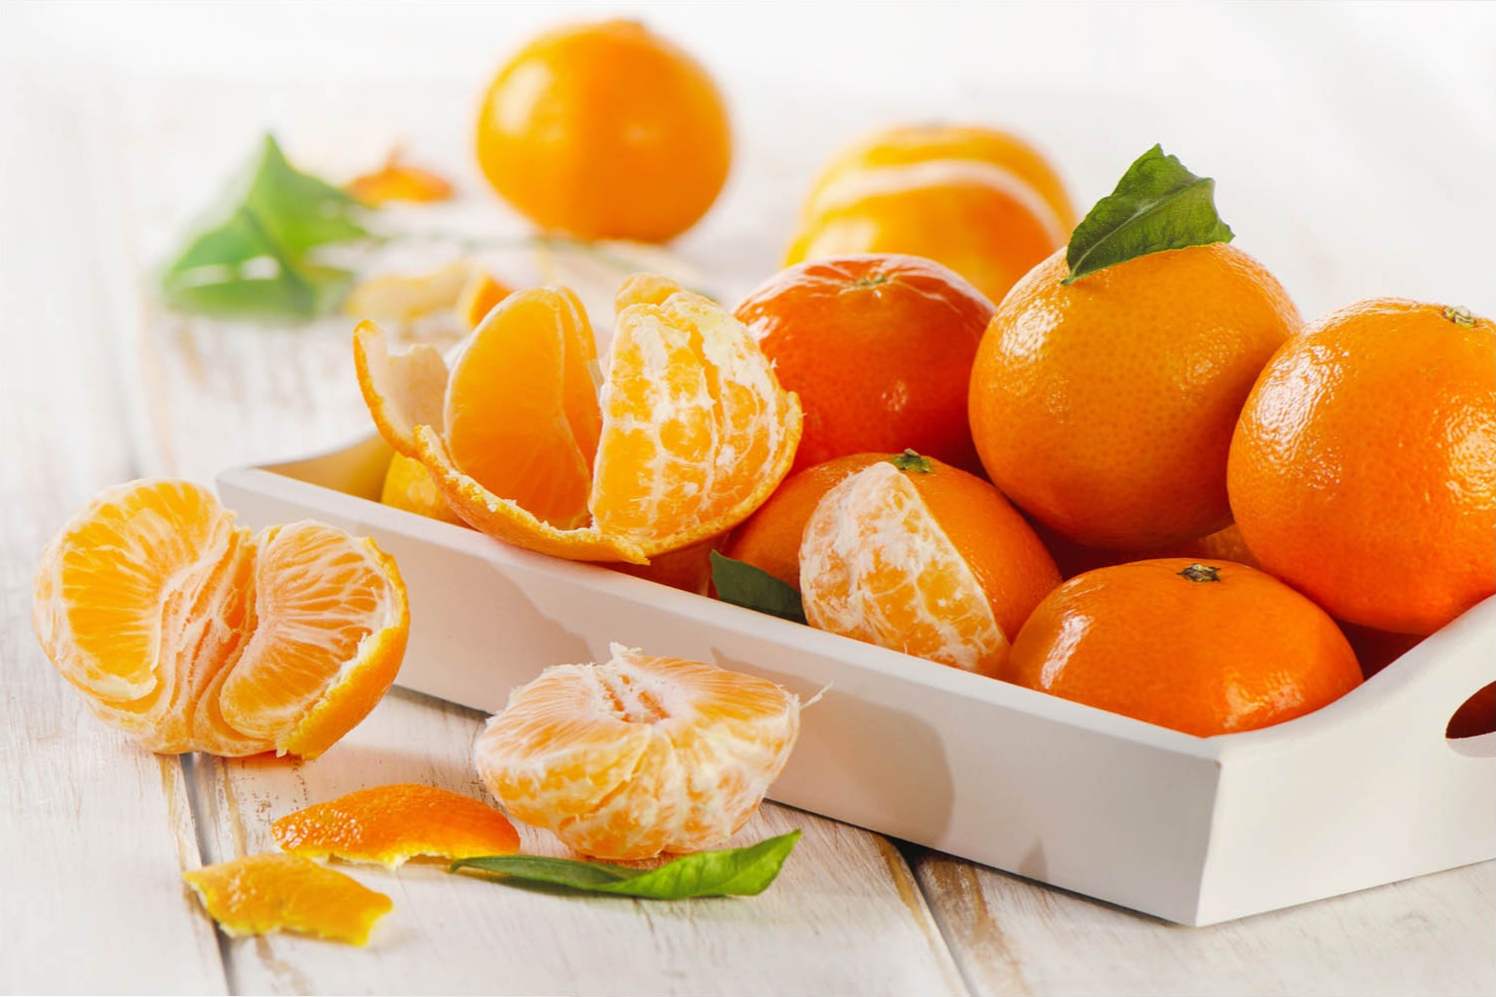 Mandarini koristijo in škodujejo zdravju ljudi, kalorijam mandarine, njihovi uporabi in kontraindikacijam